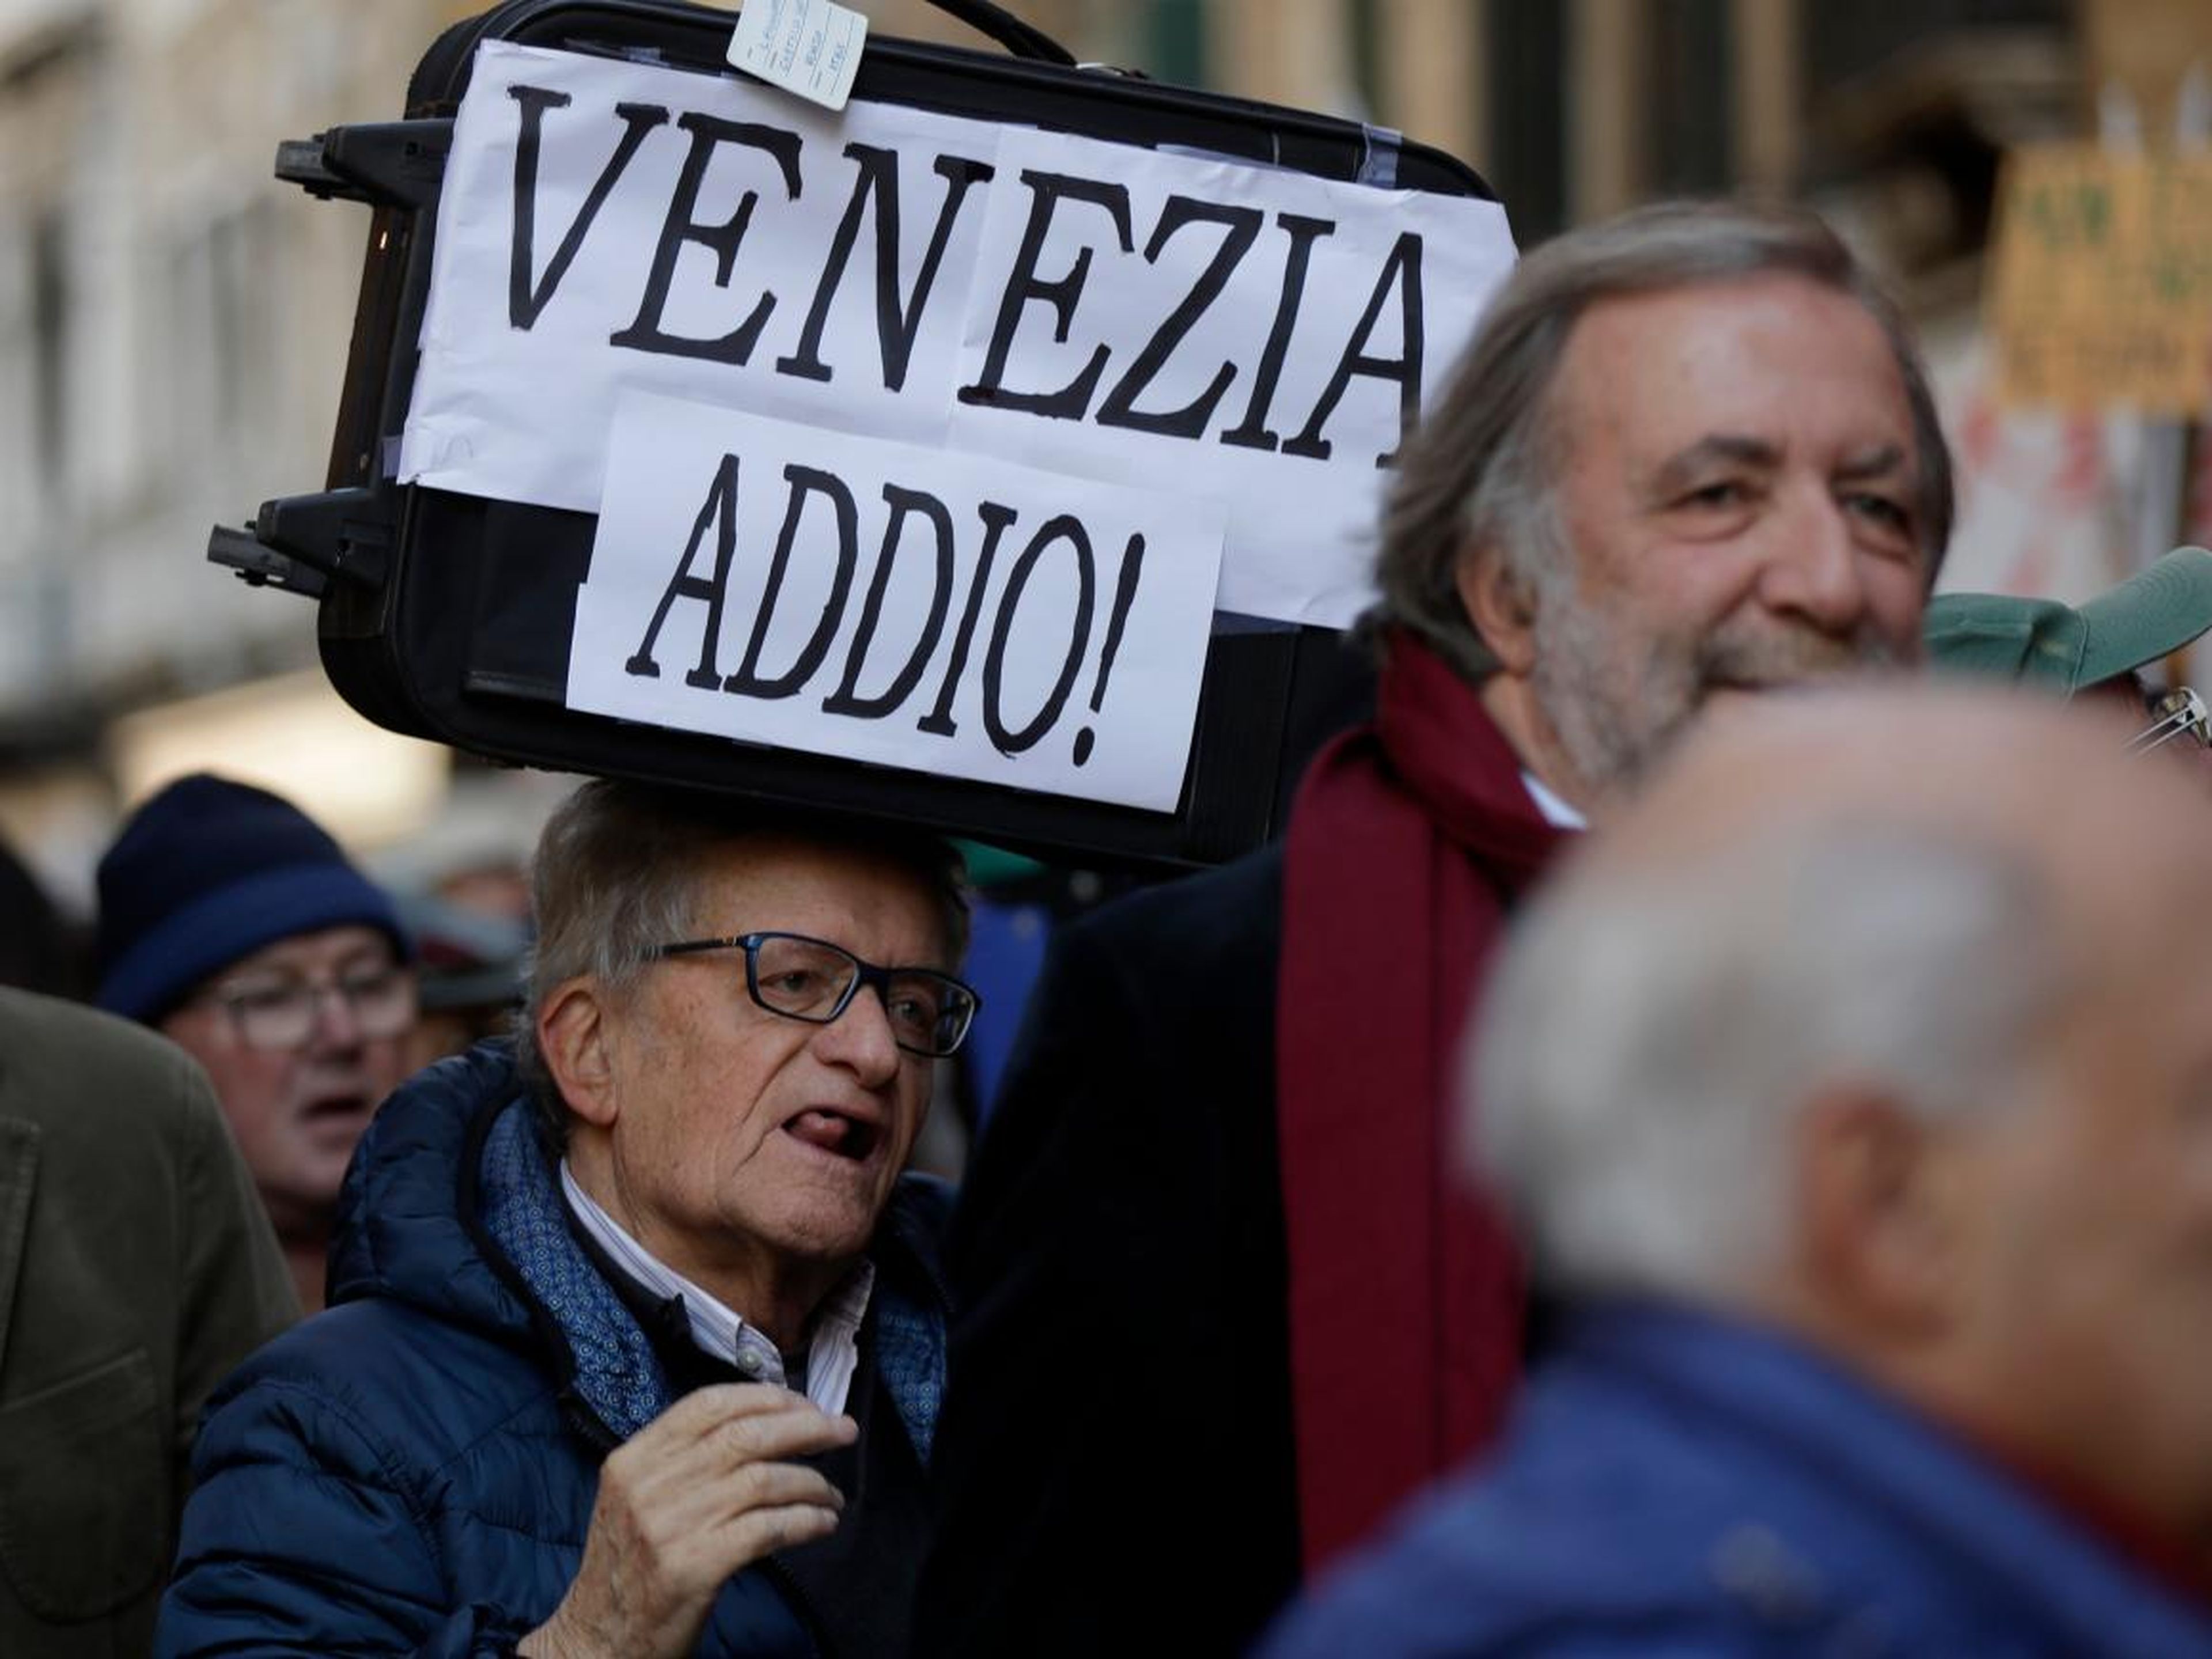 Un manifestante sostiene una pancarta que dice "Adiós Venecia" durante una protesta de 2016.